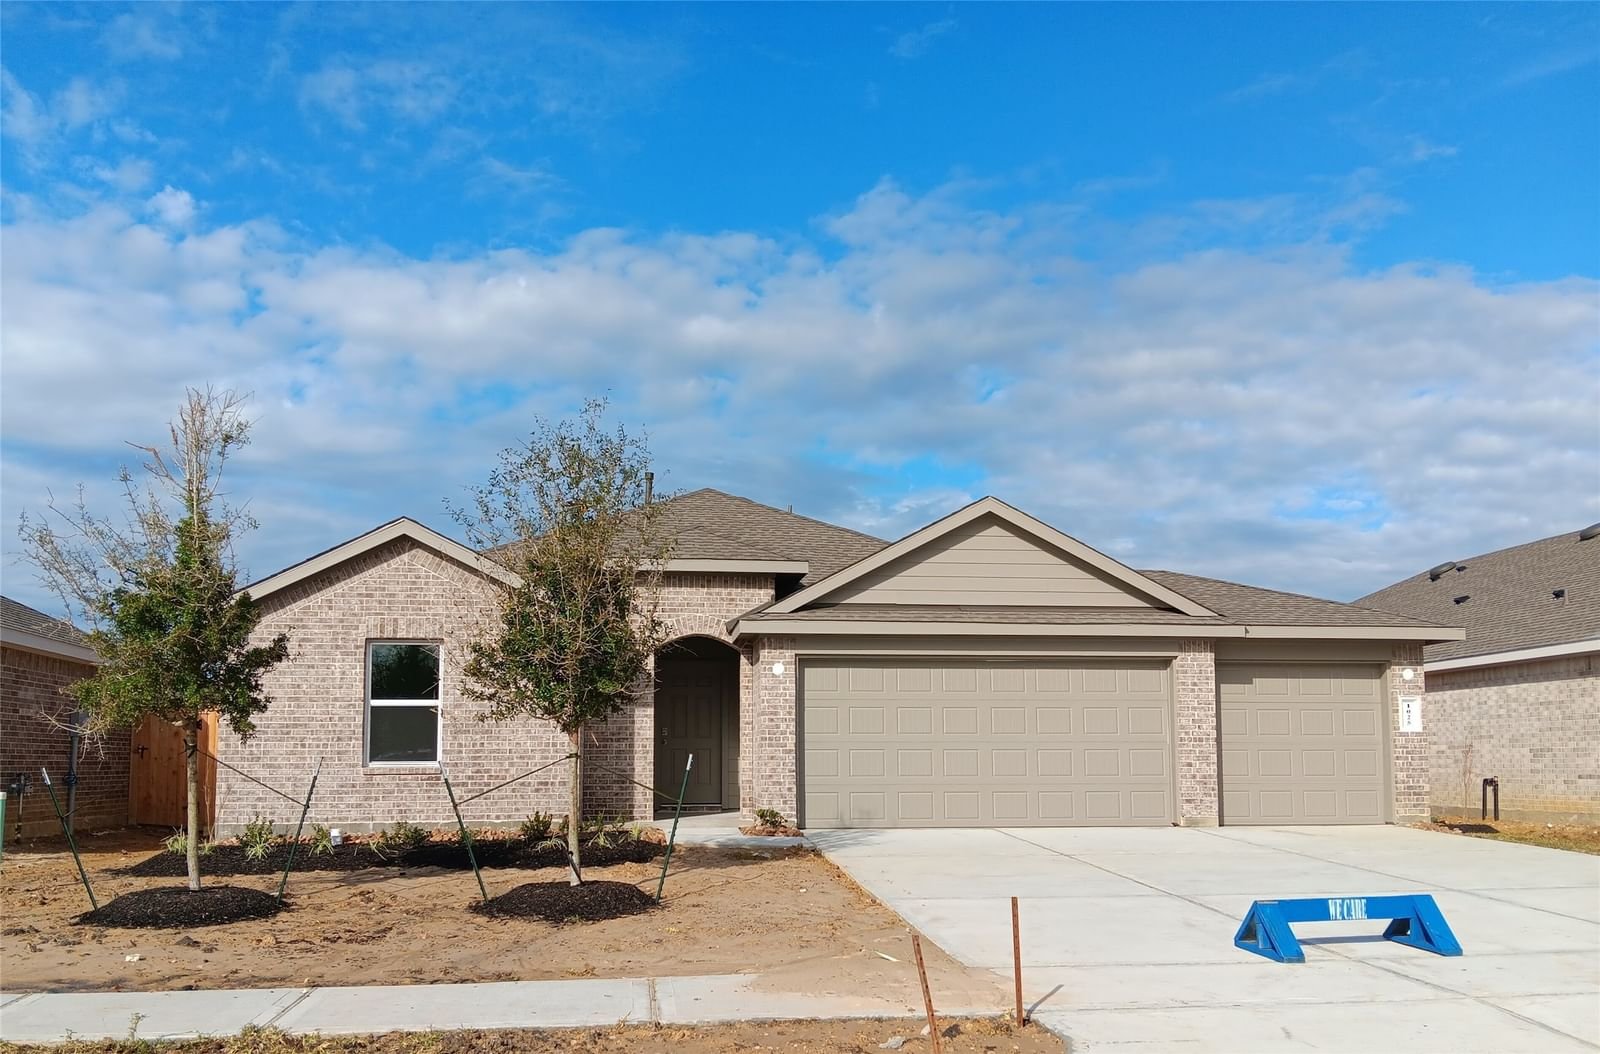 Real estate property located at 1025 Llano, Liberty, River Ranch Meadows, Dayton, TX, US